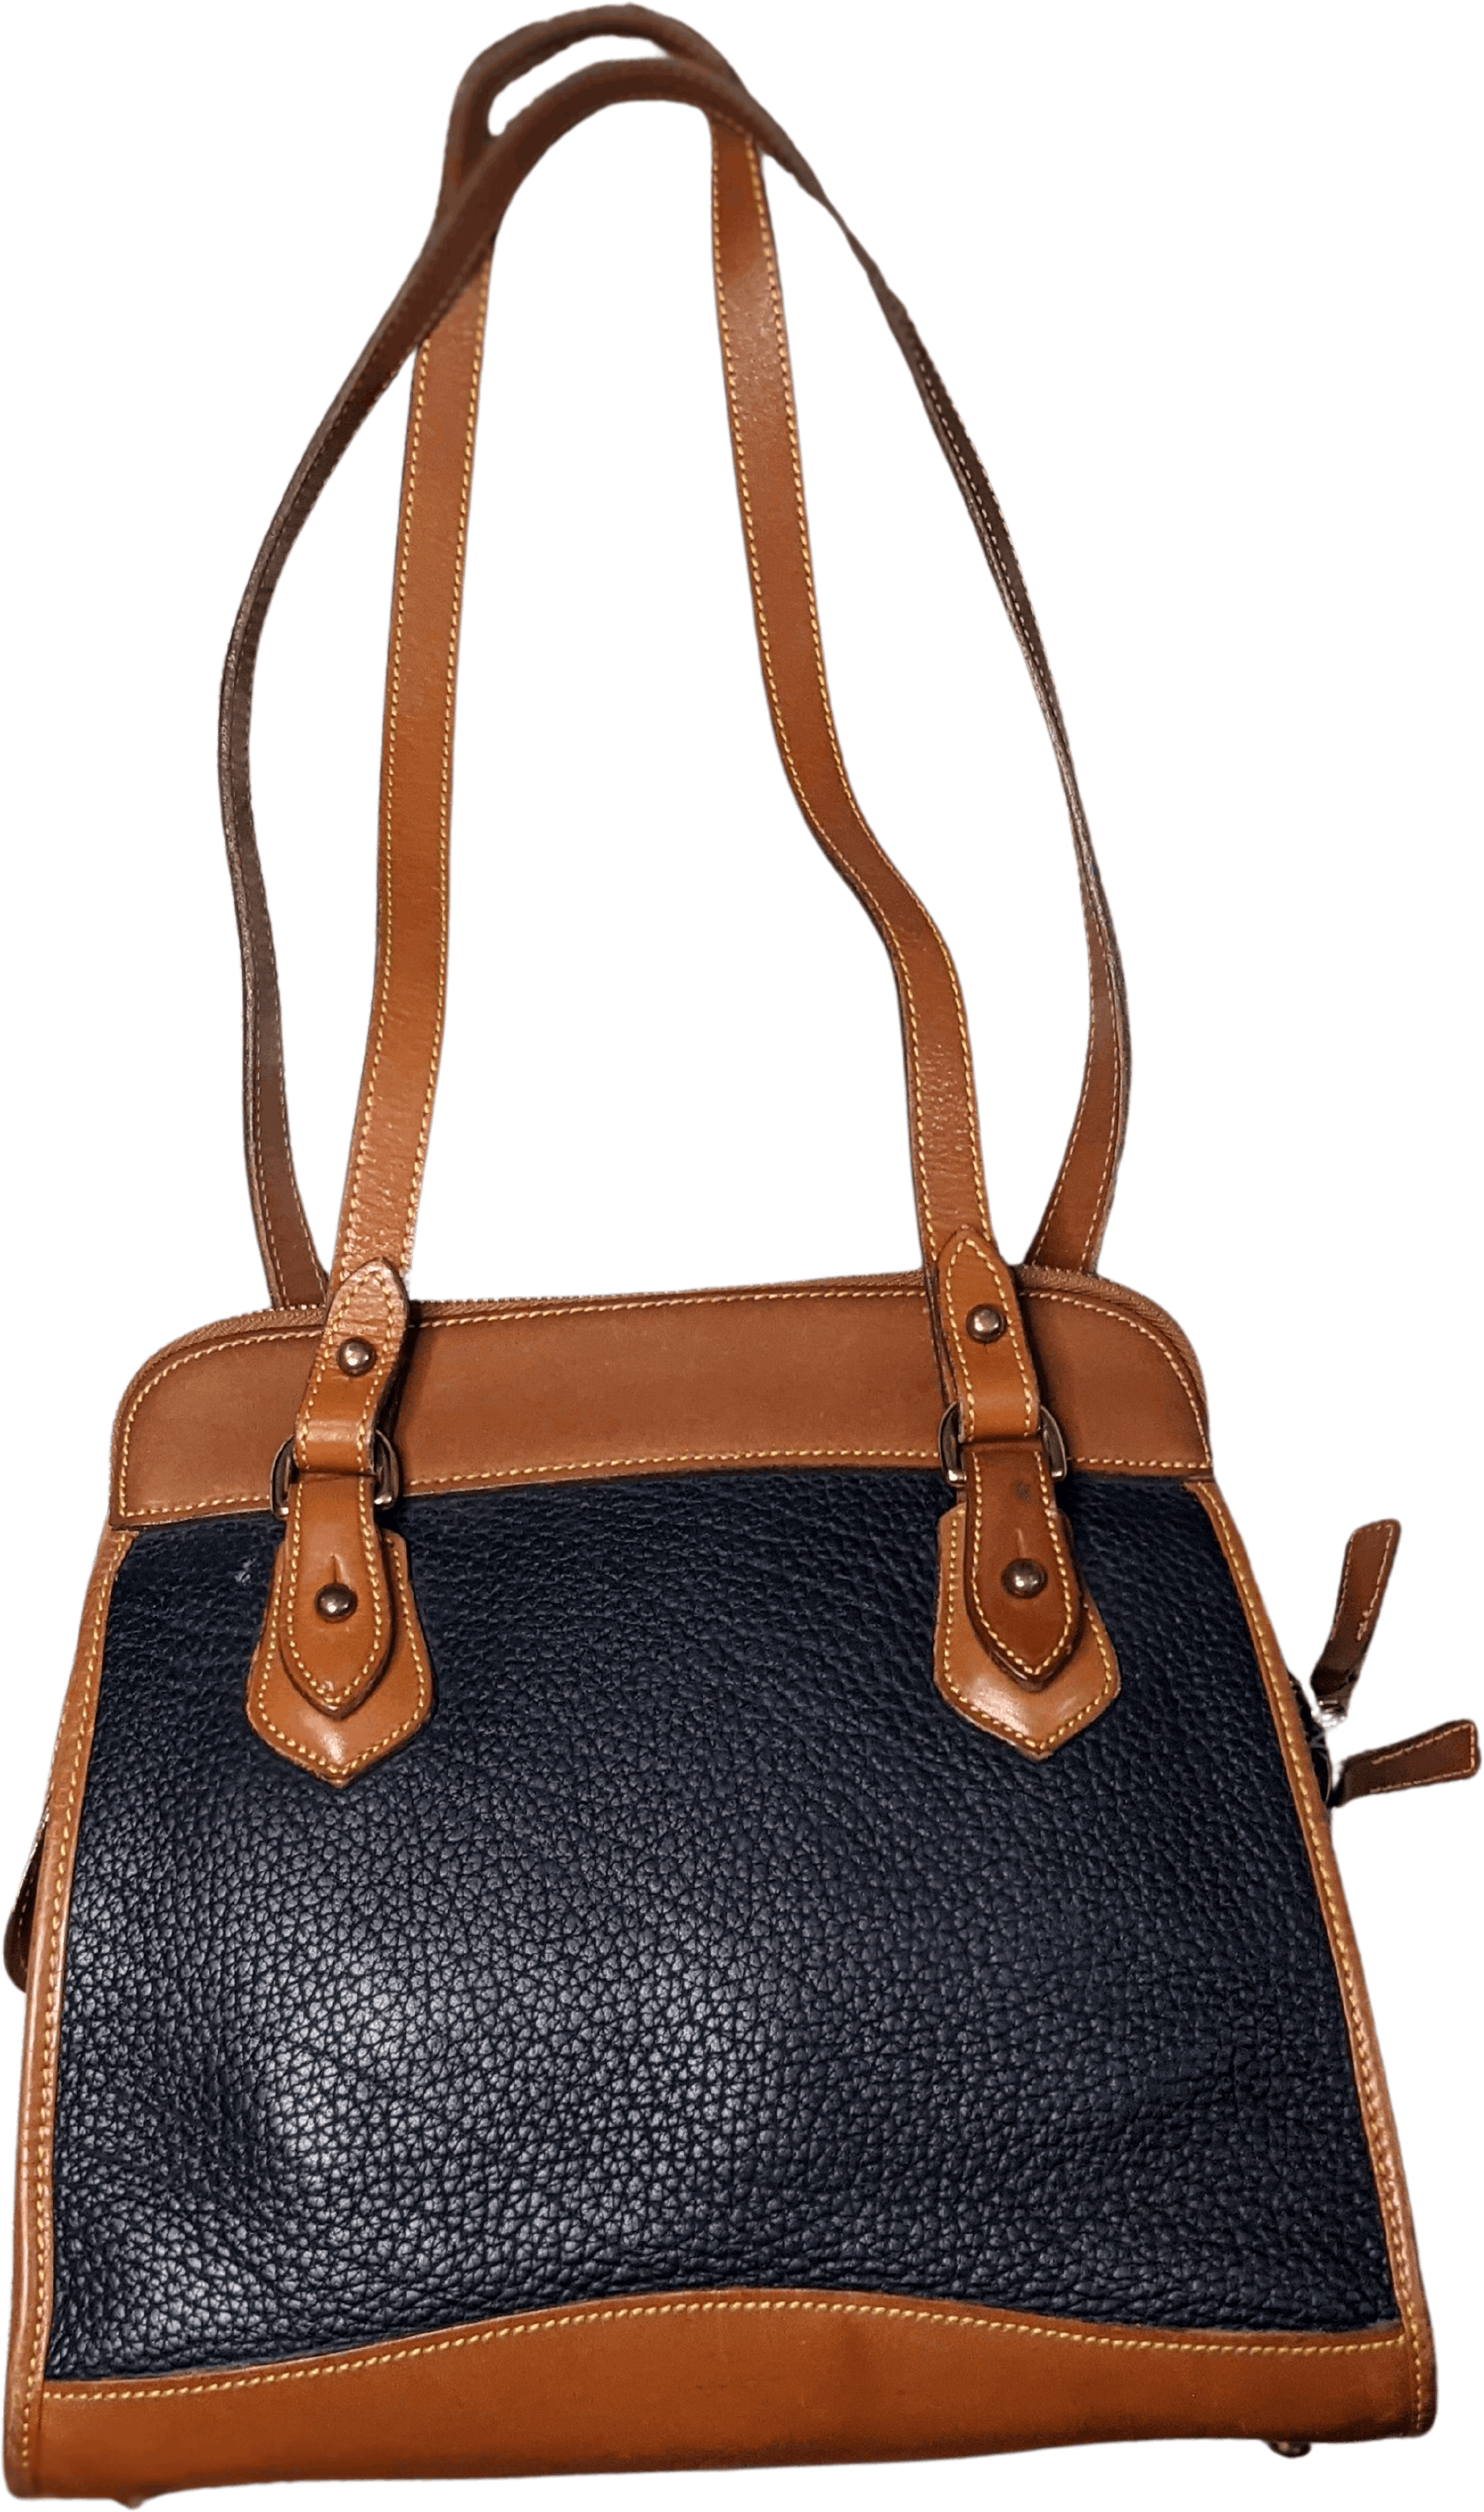 Dooney Bourke Handbag Purse Leather Red/brown Shoulder Bag